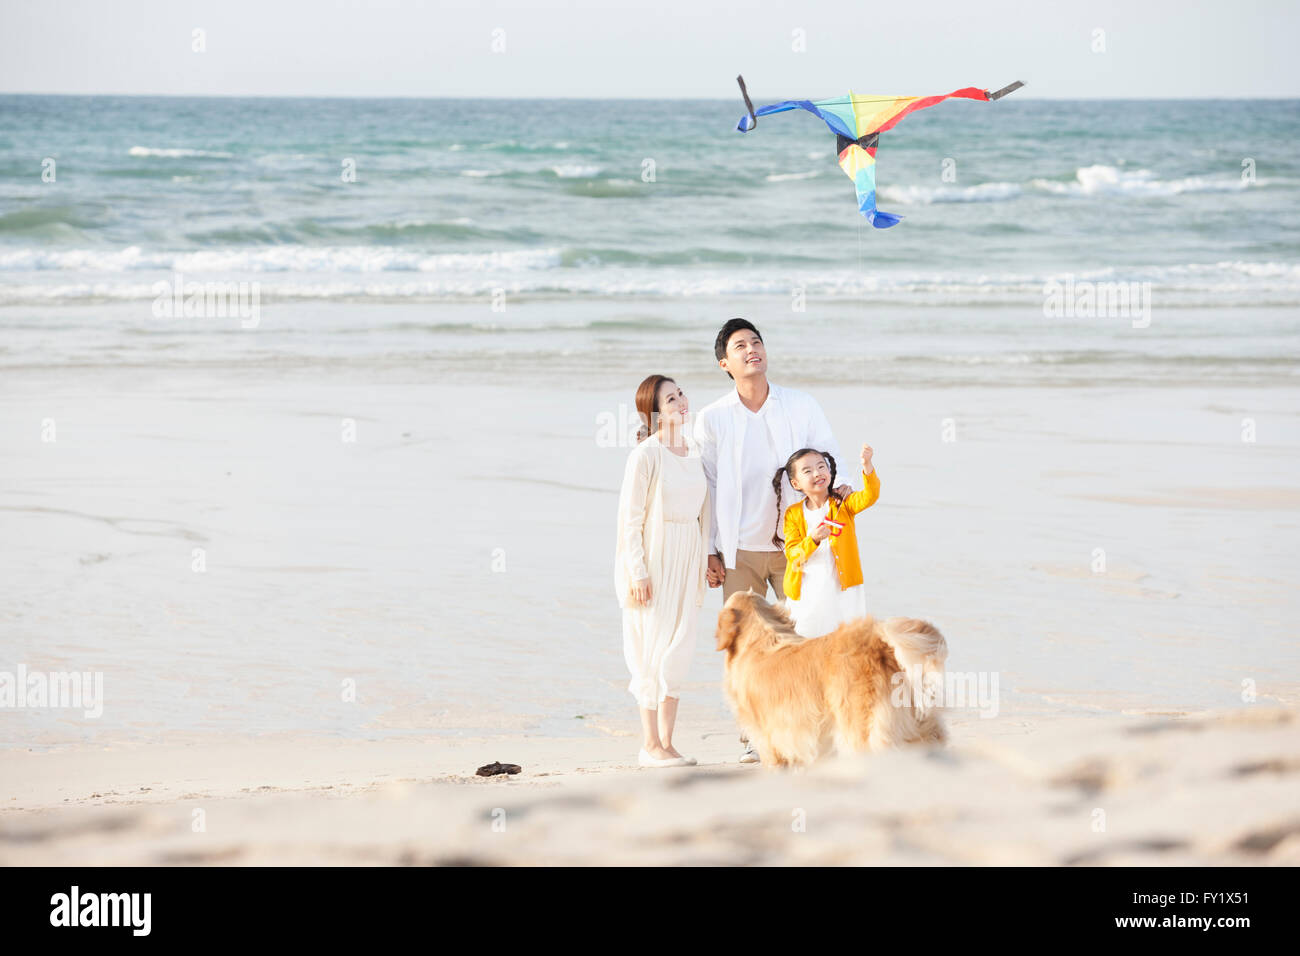 Chica volar una cometa y sus padres en la playa con un perro juntos Foto de stock